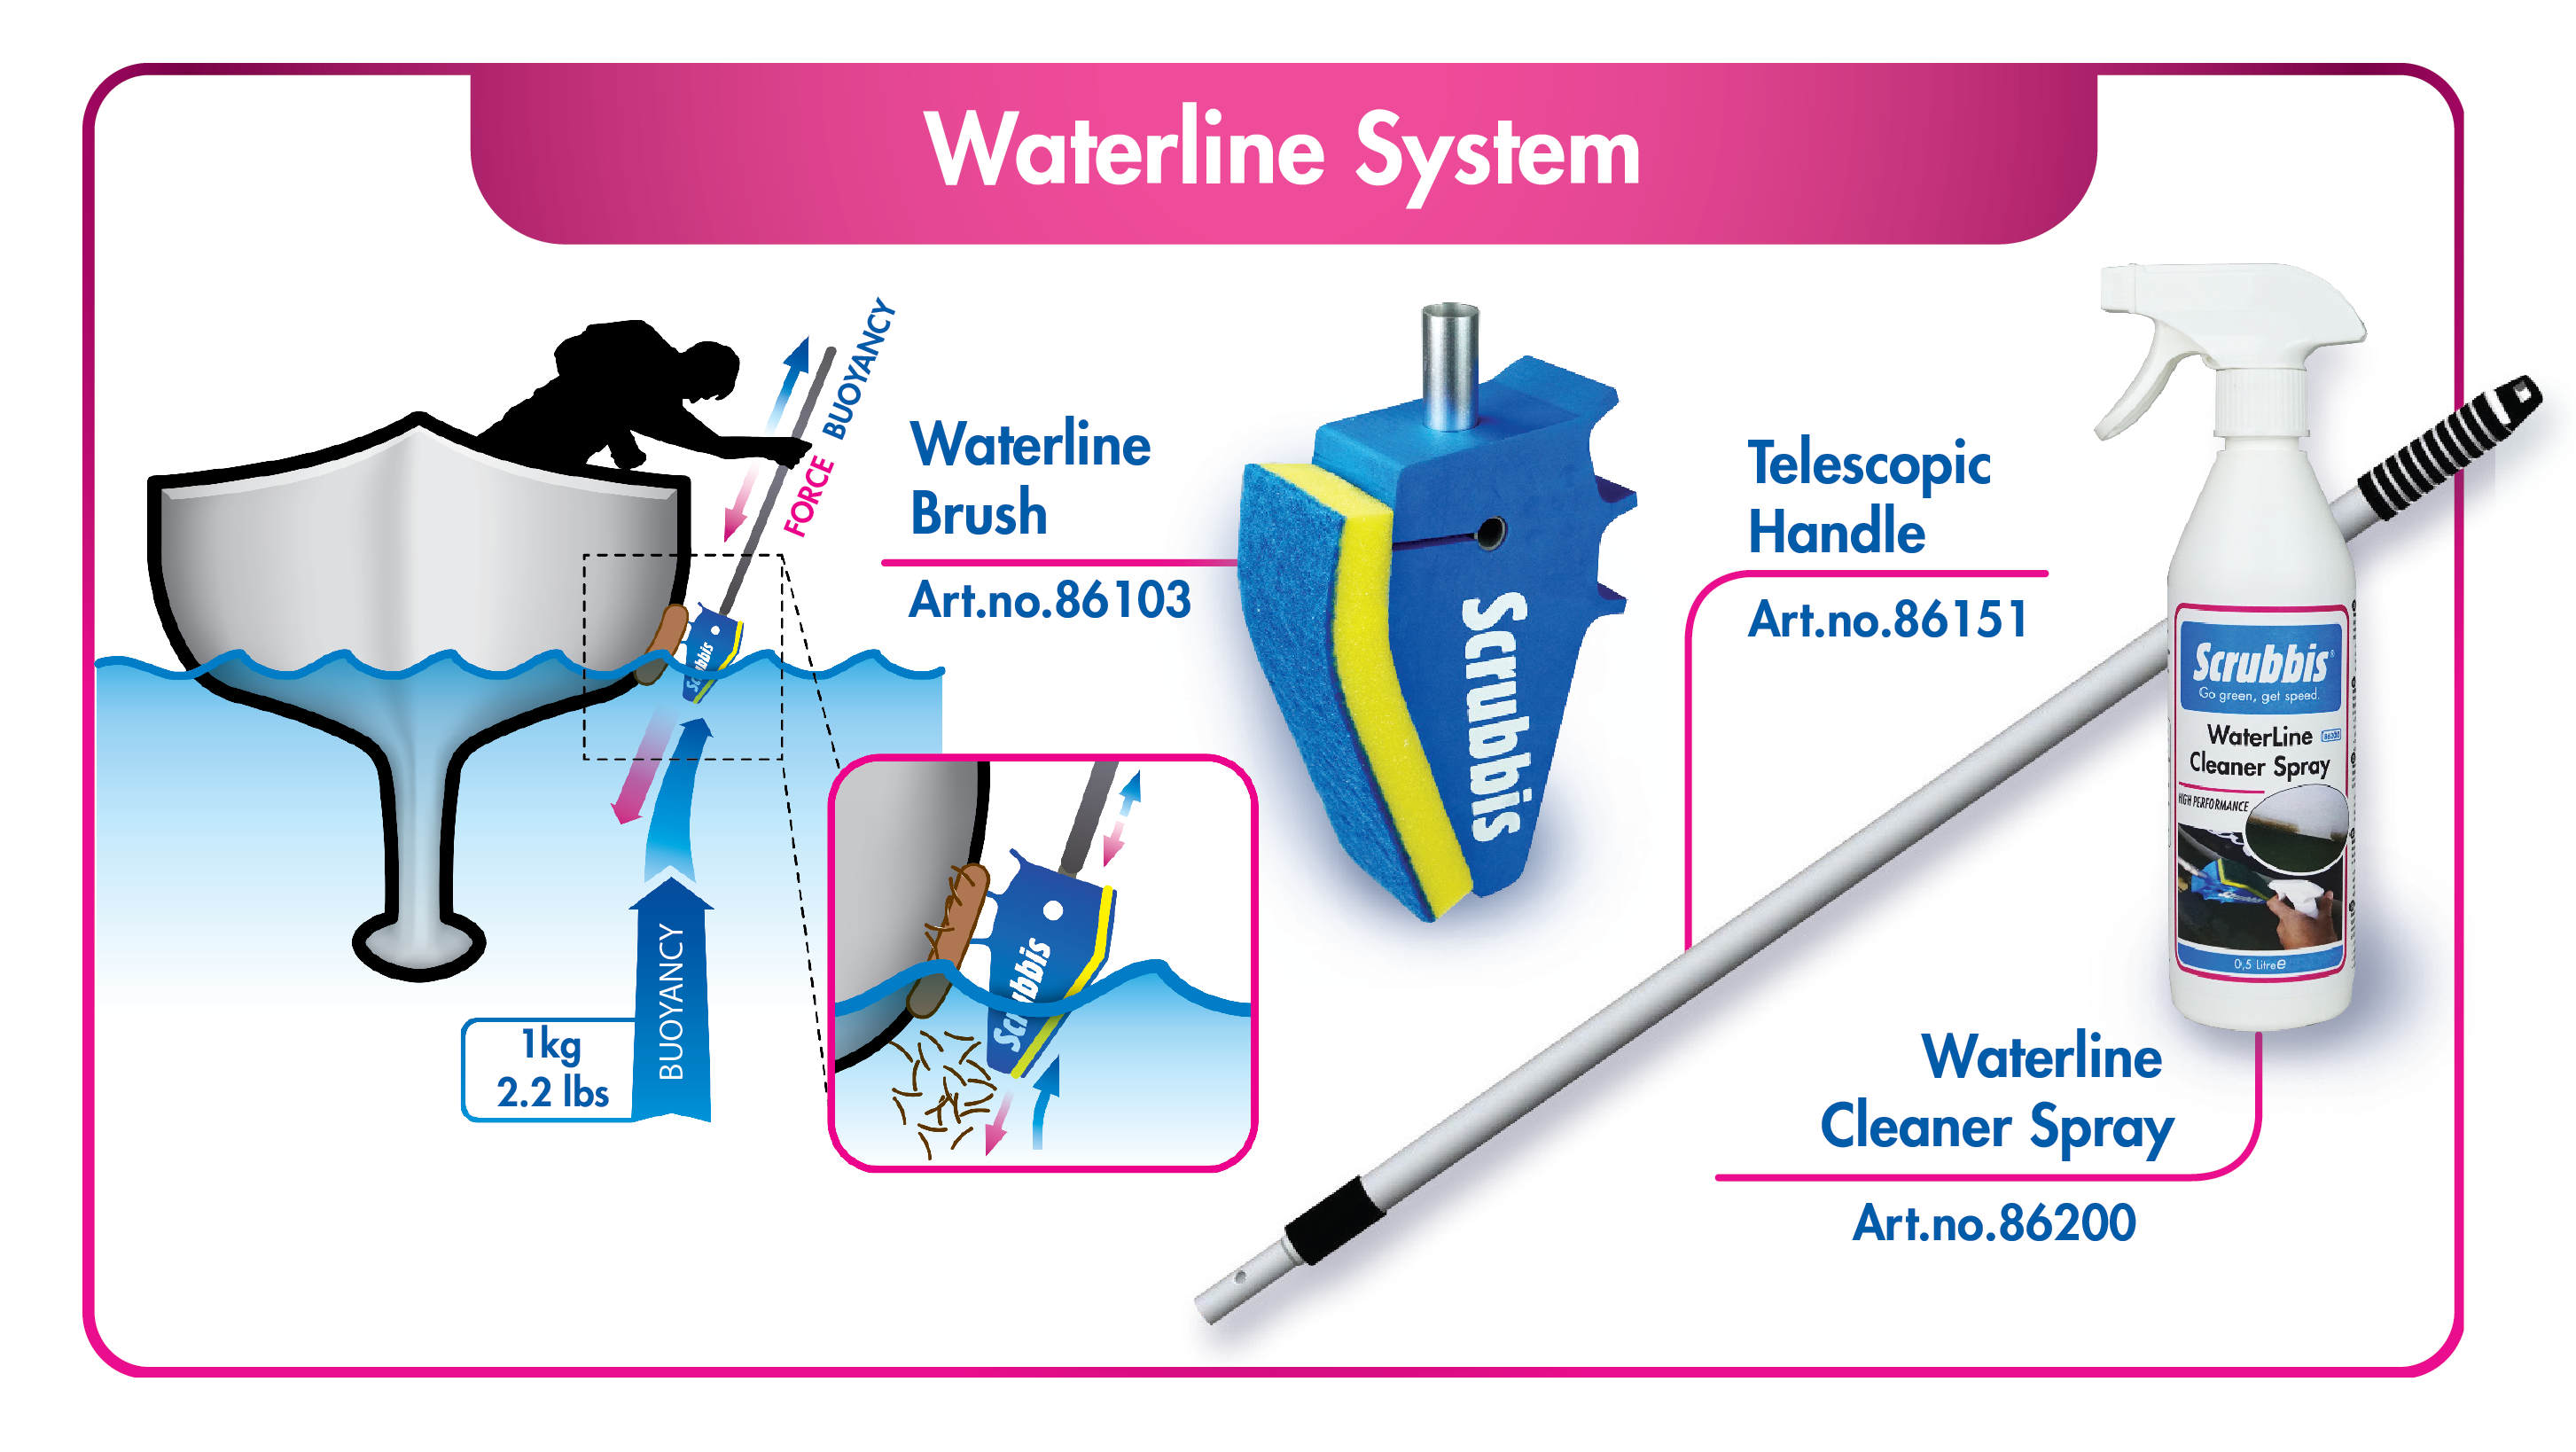 scrubbis-waterline-system